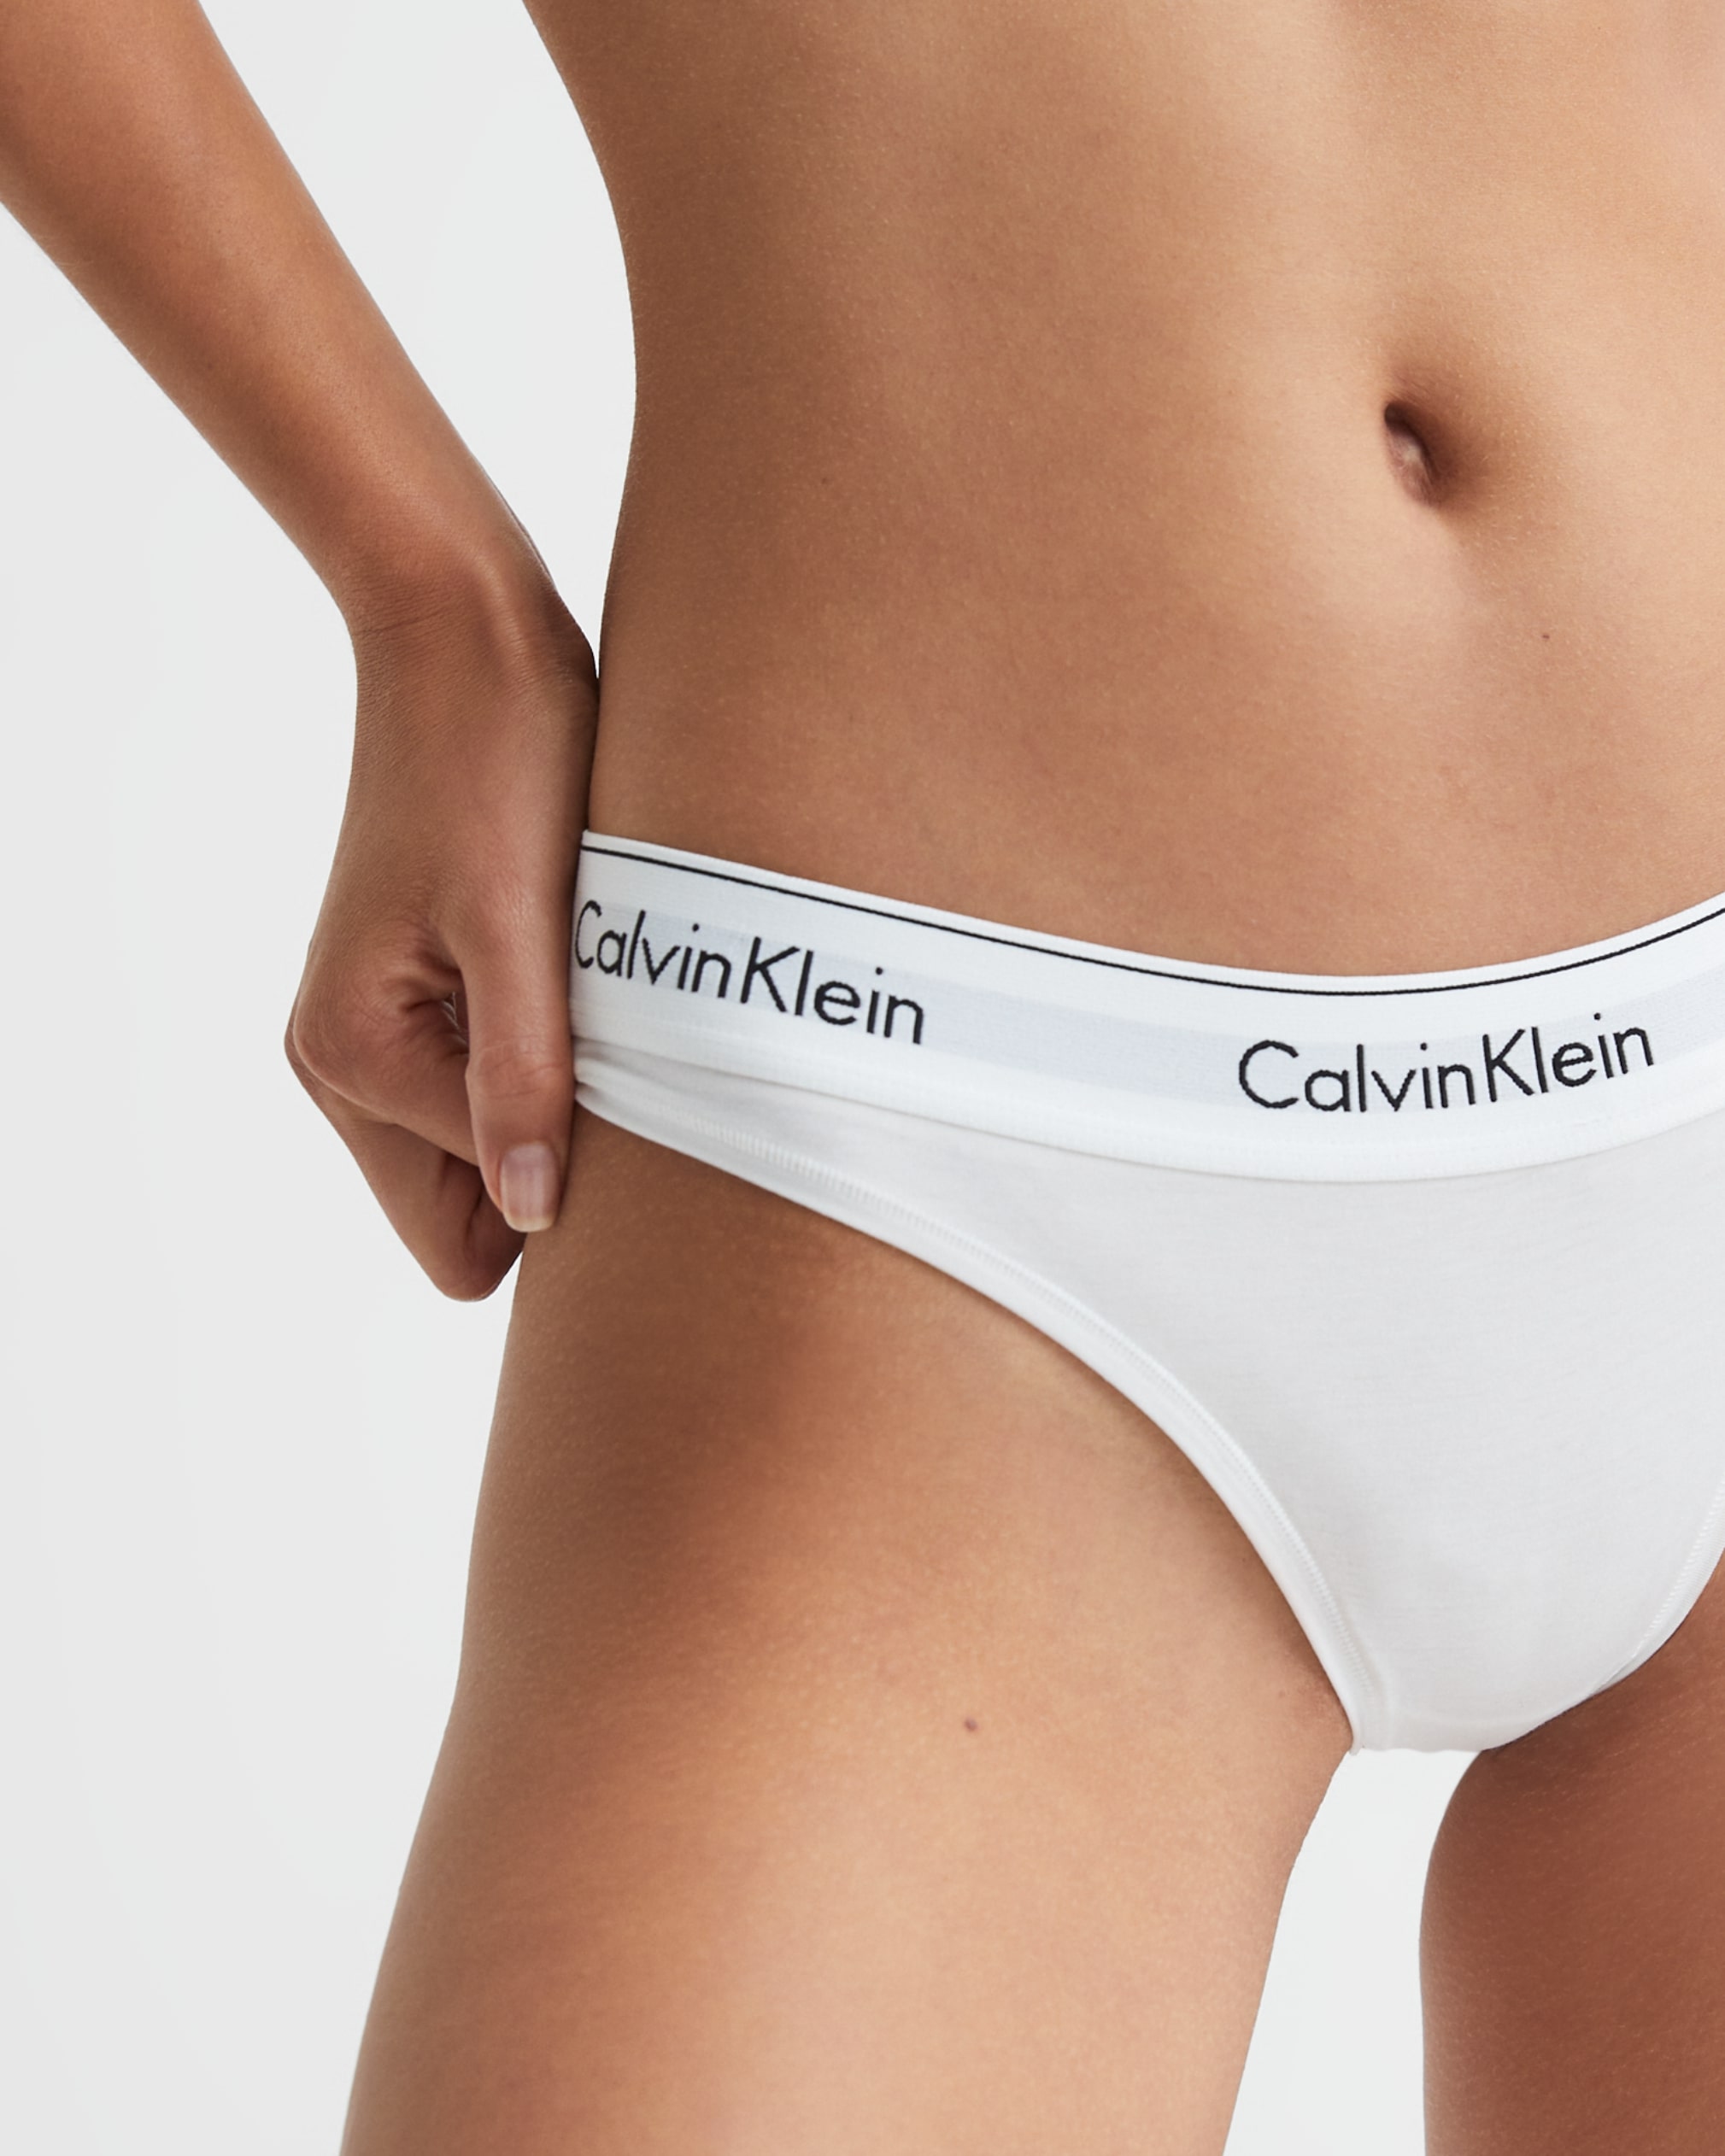 OO  Calvin Klein Underwear Calvin Klein Underwear Women's Form